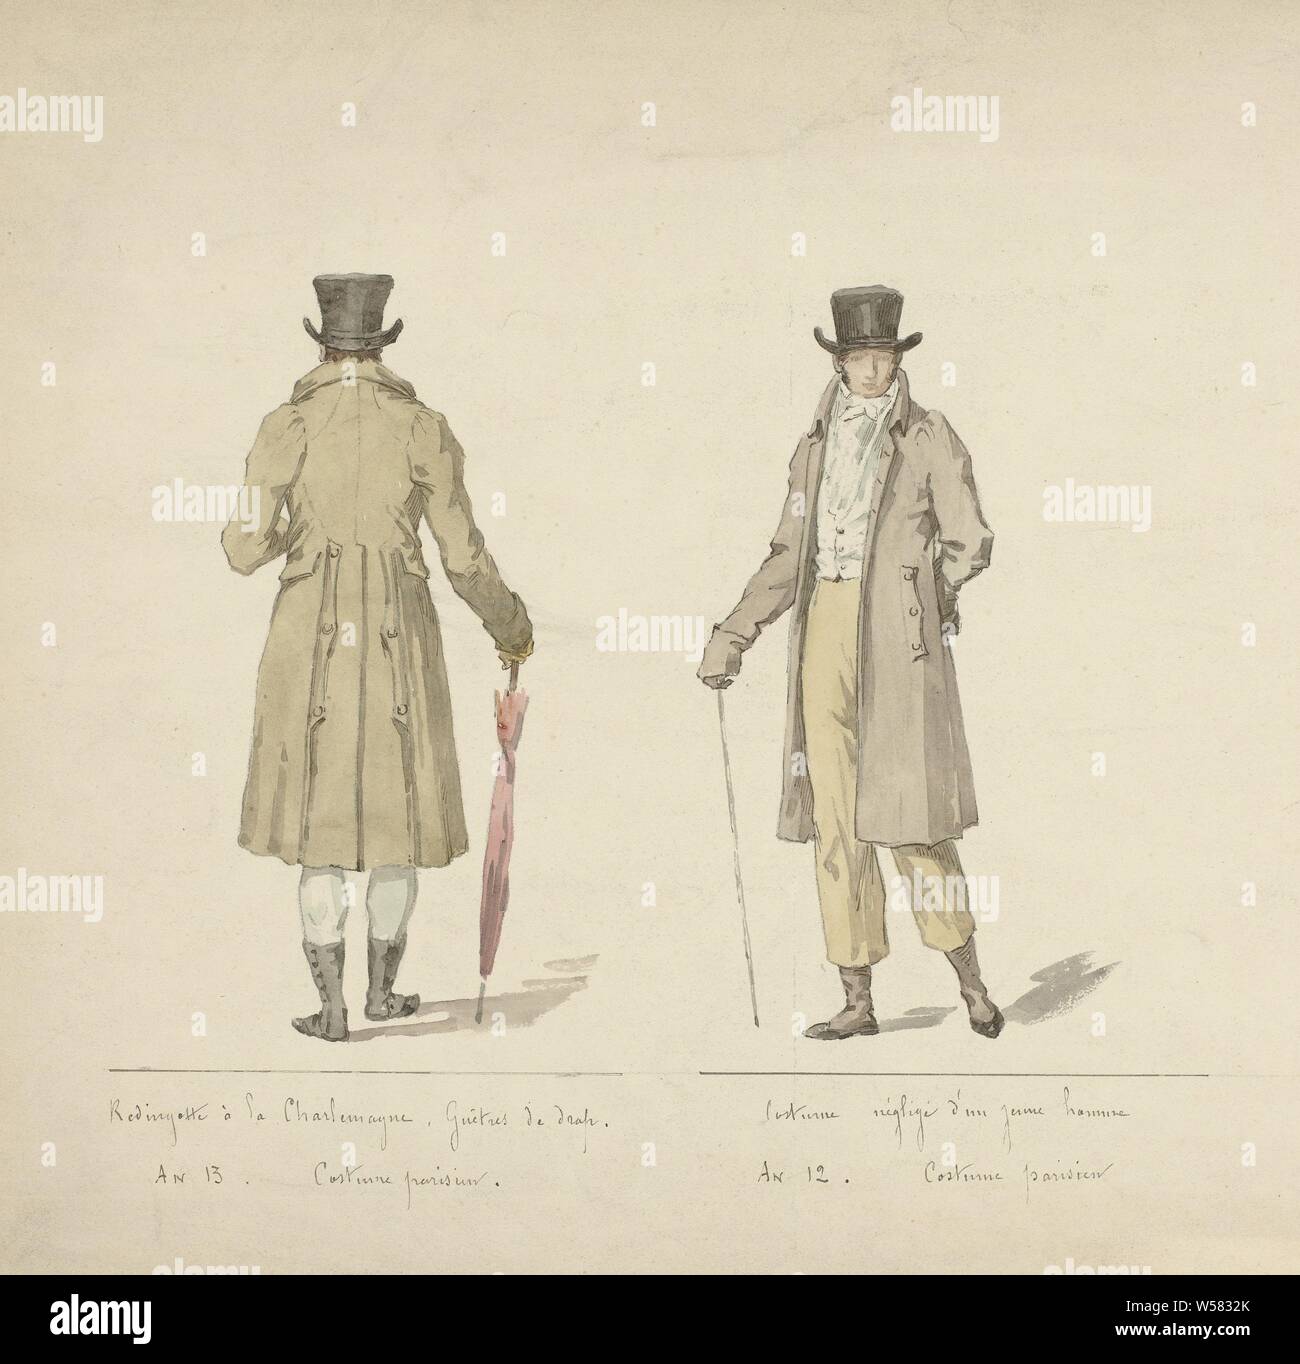 Oficial de las Damas y la moda, traje Parisien, 1803-1804: Redingotte à la  Charlemagne ..., a la izquierda un hombre visto en la espalda, en una  chaqueta que se convirtió en "Redingotte